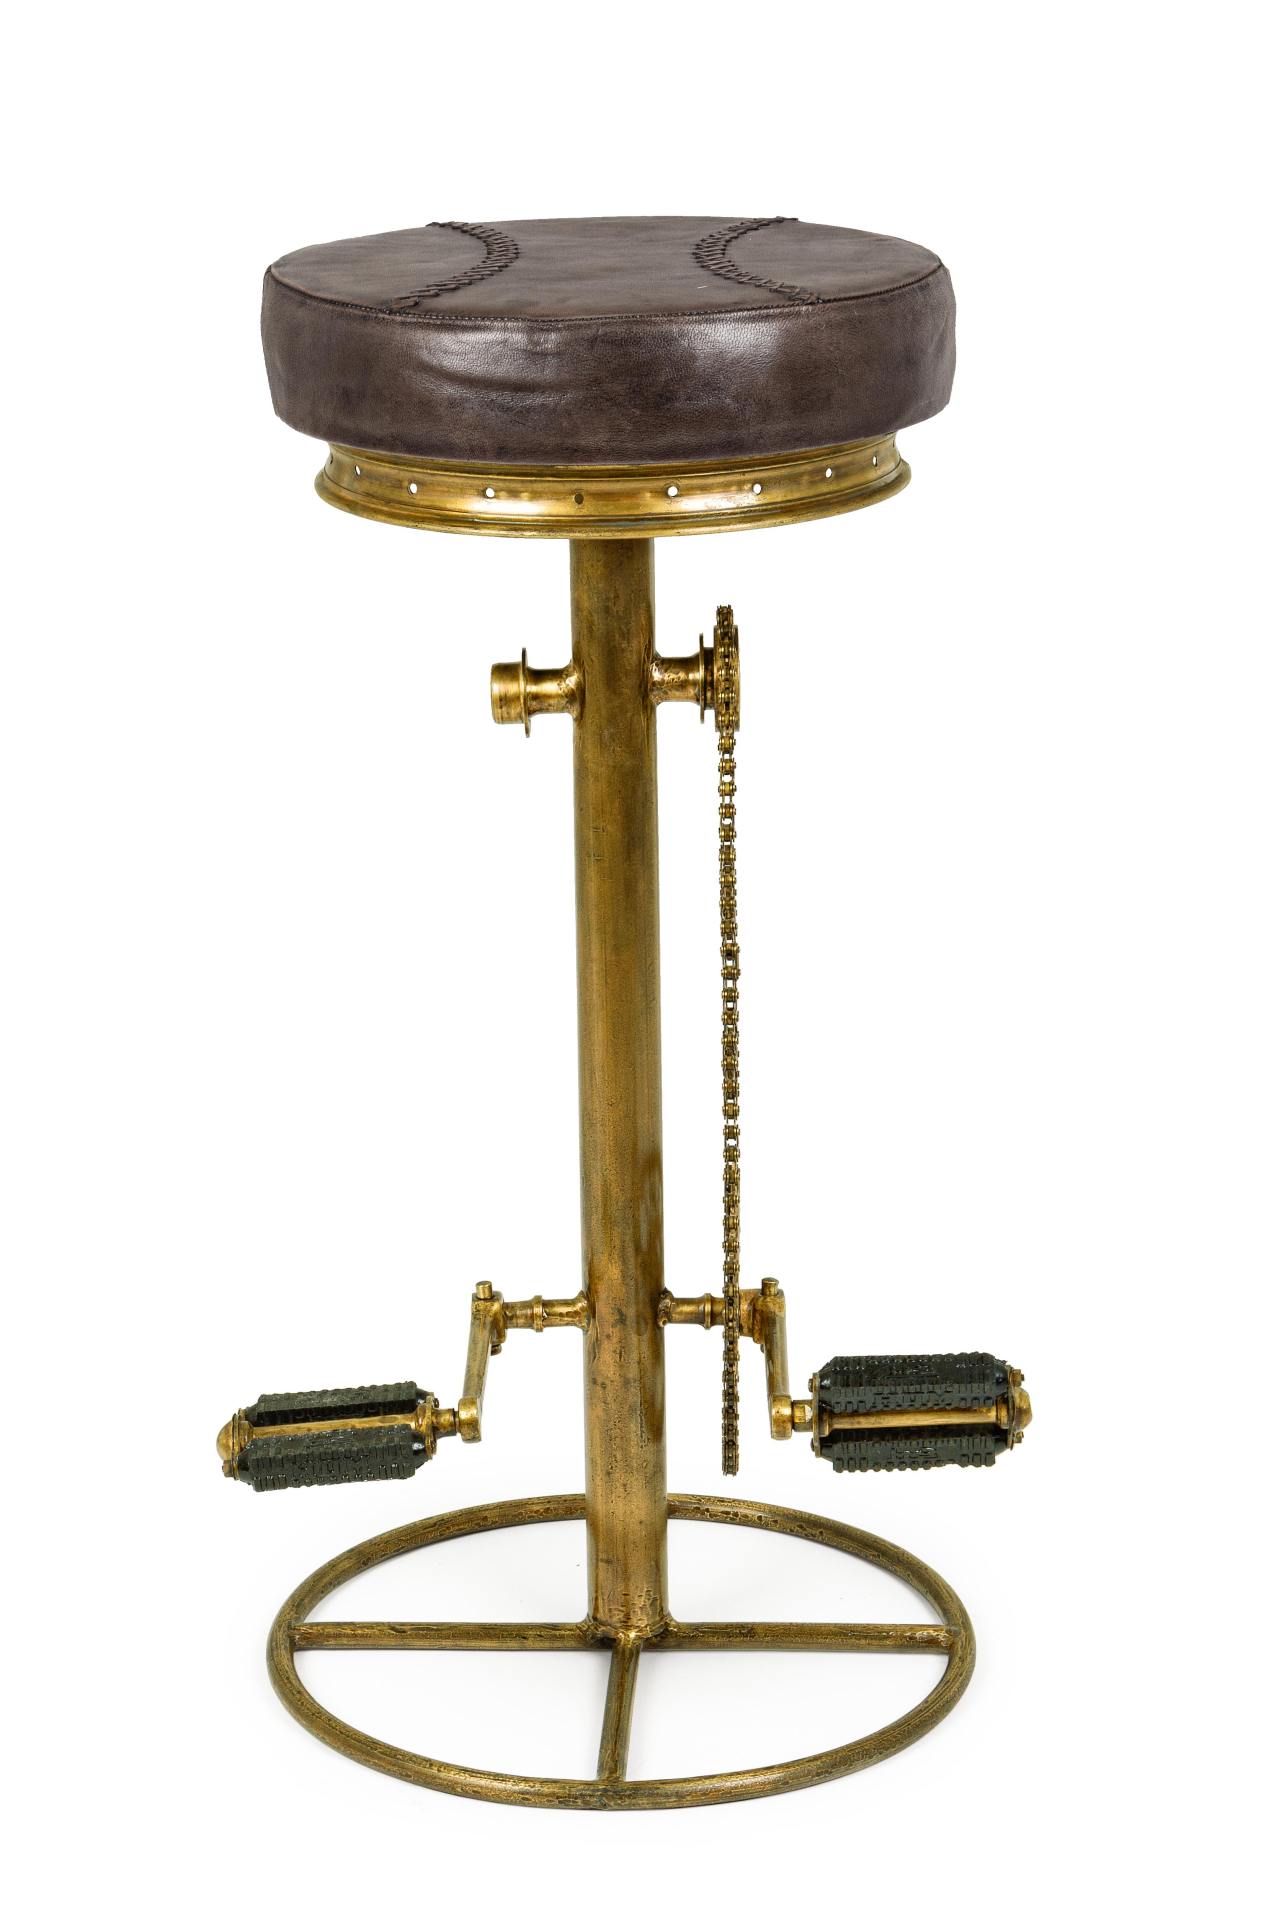 Der Barhocker Cycle überzeugt mit seinem industriellem Design. Gefertigt wurde er aus Leder, welches einen braunen Farbton besitzt. Das Gestell ist aus Metall und hat eine goldenen Farbe. Die Sitzhöhe des Hockers beträgt 80 cm.